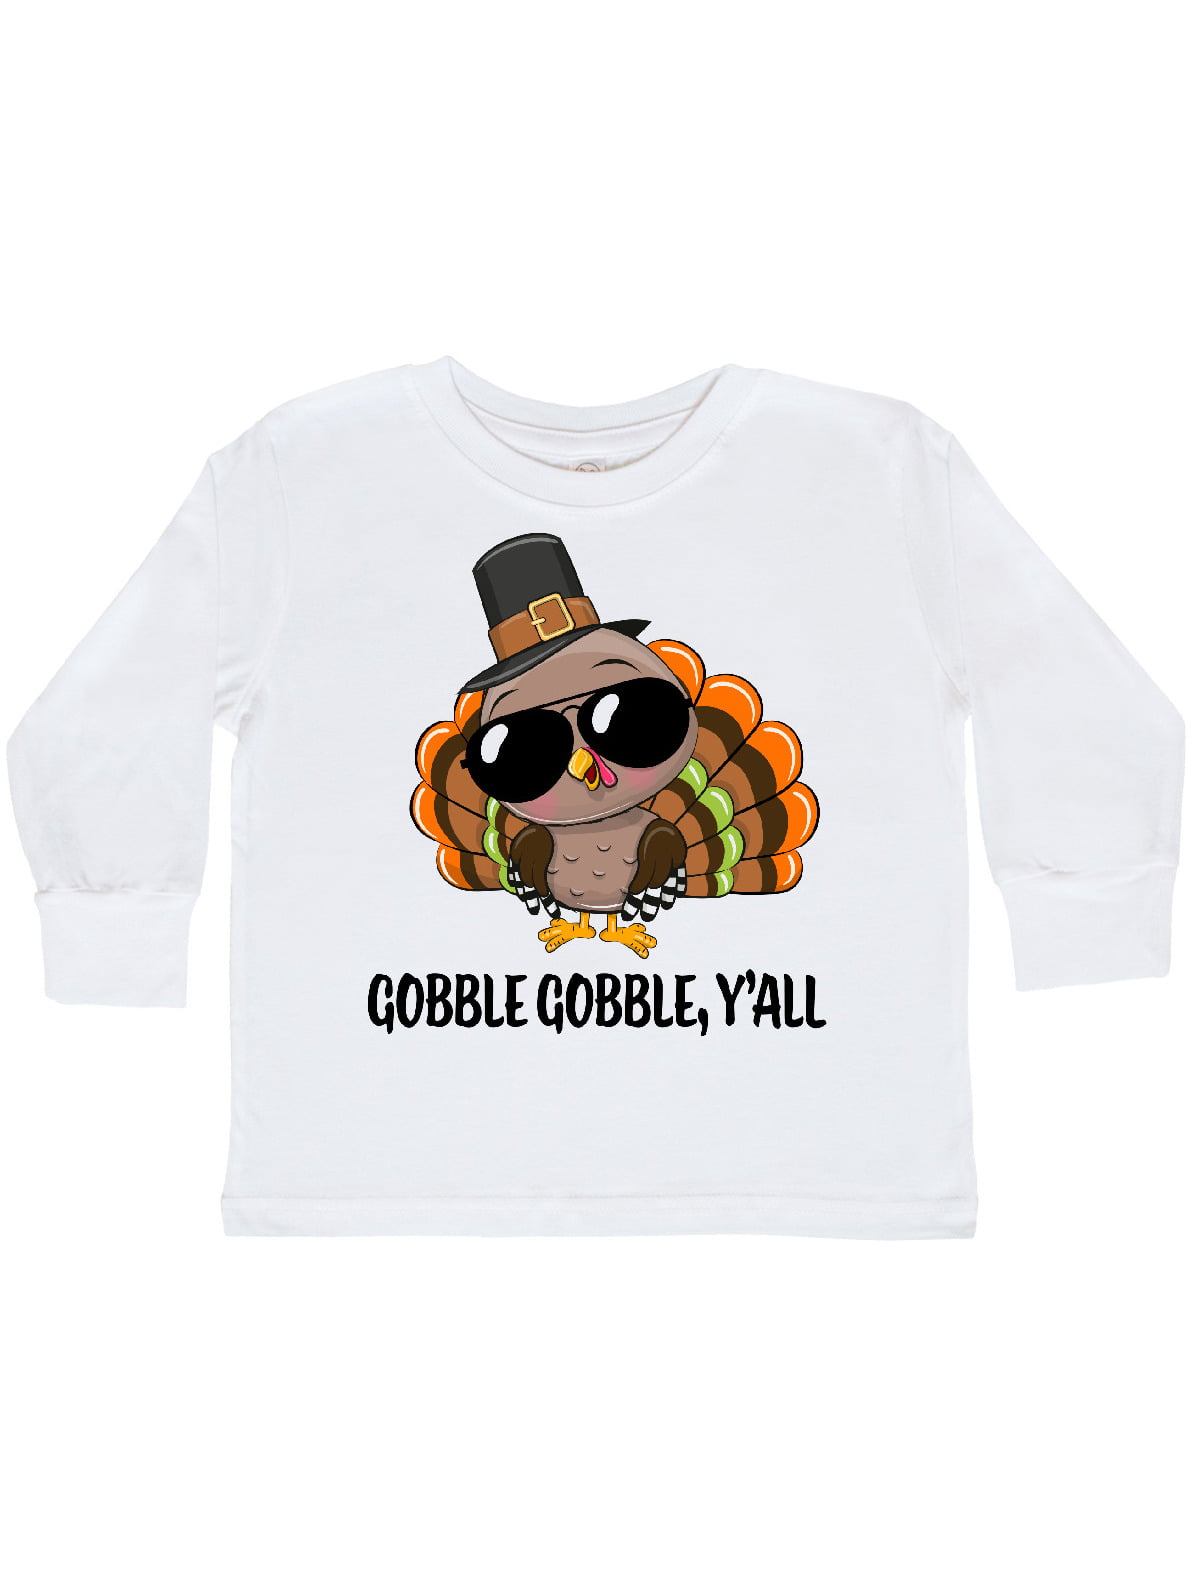 Turkey Gobble Gobble Shirt Thanksgiving Toddler Kids Long Sleeve Tshirt 